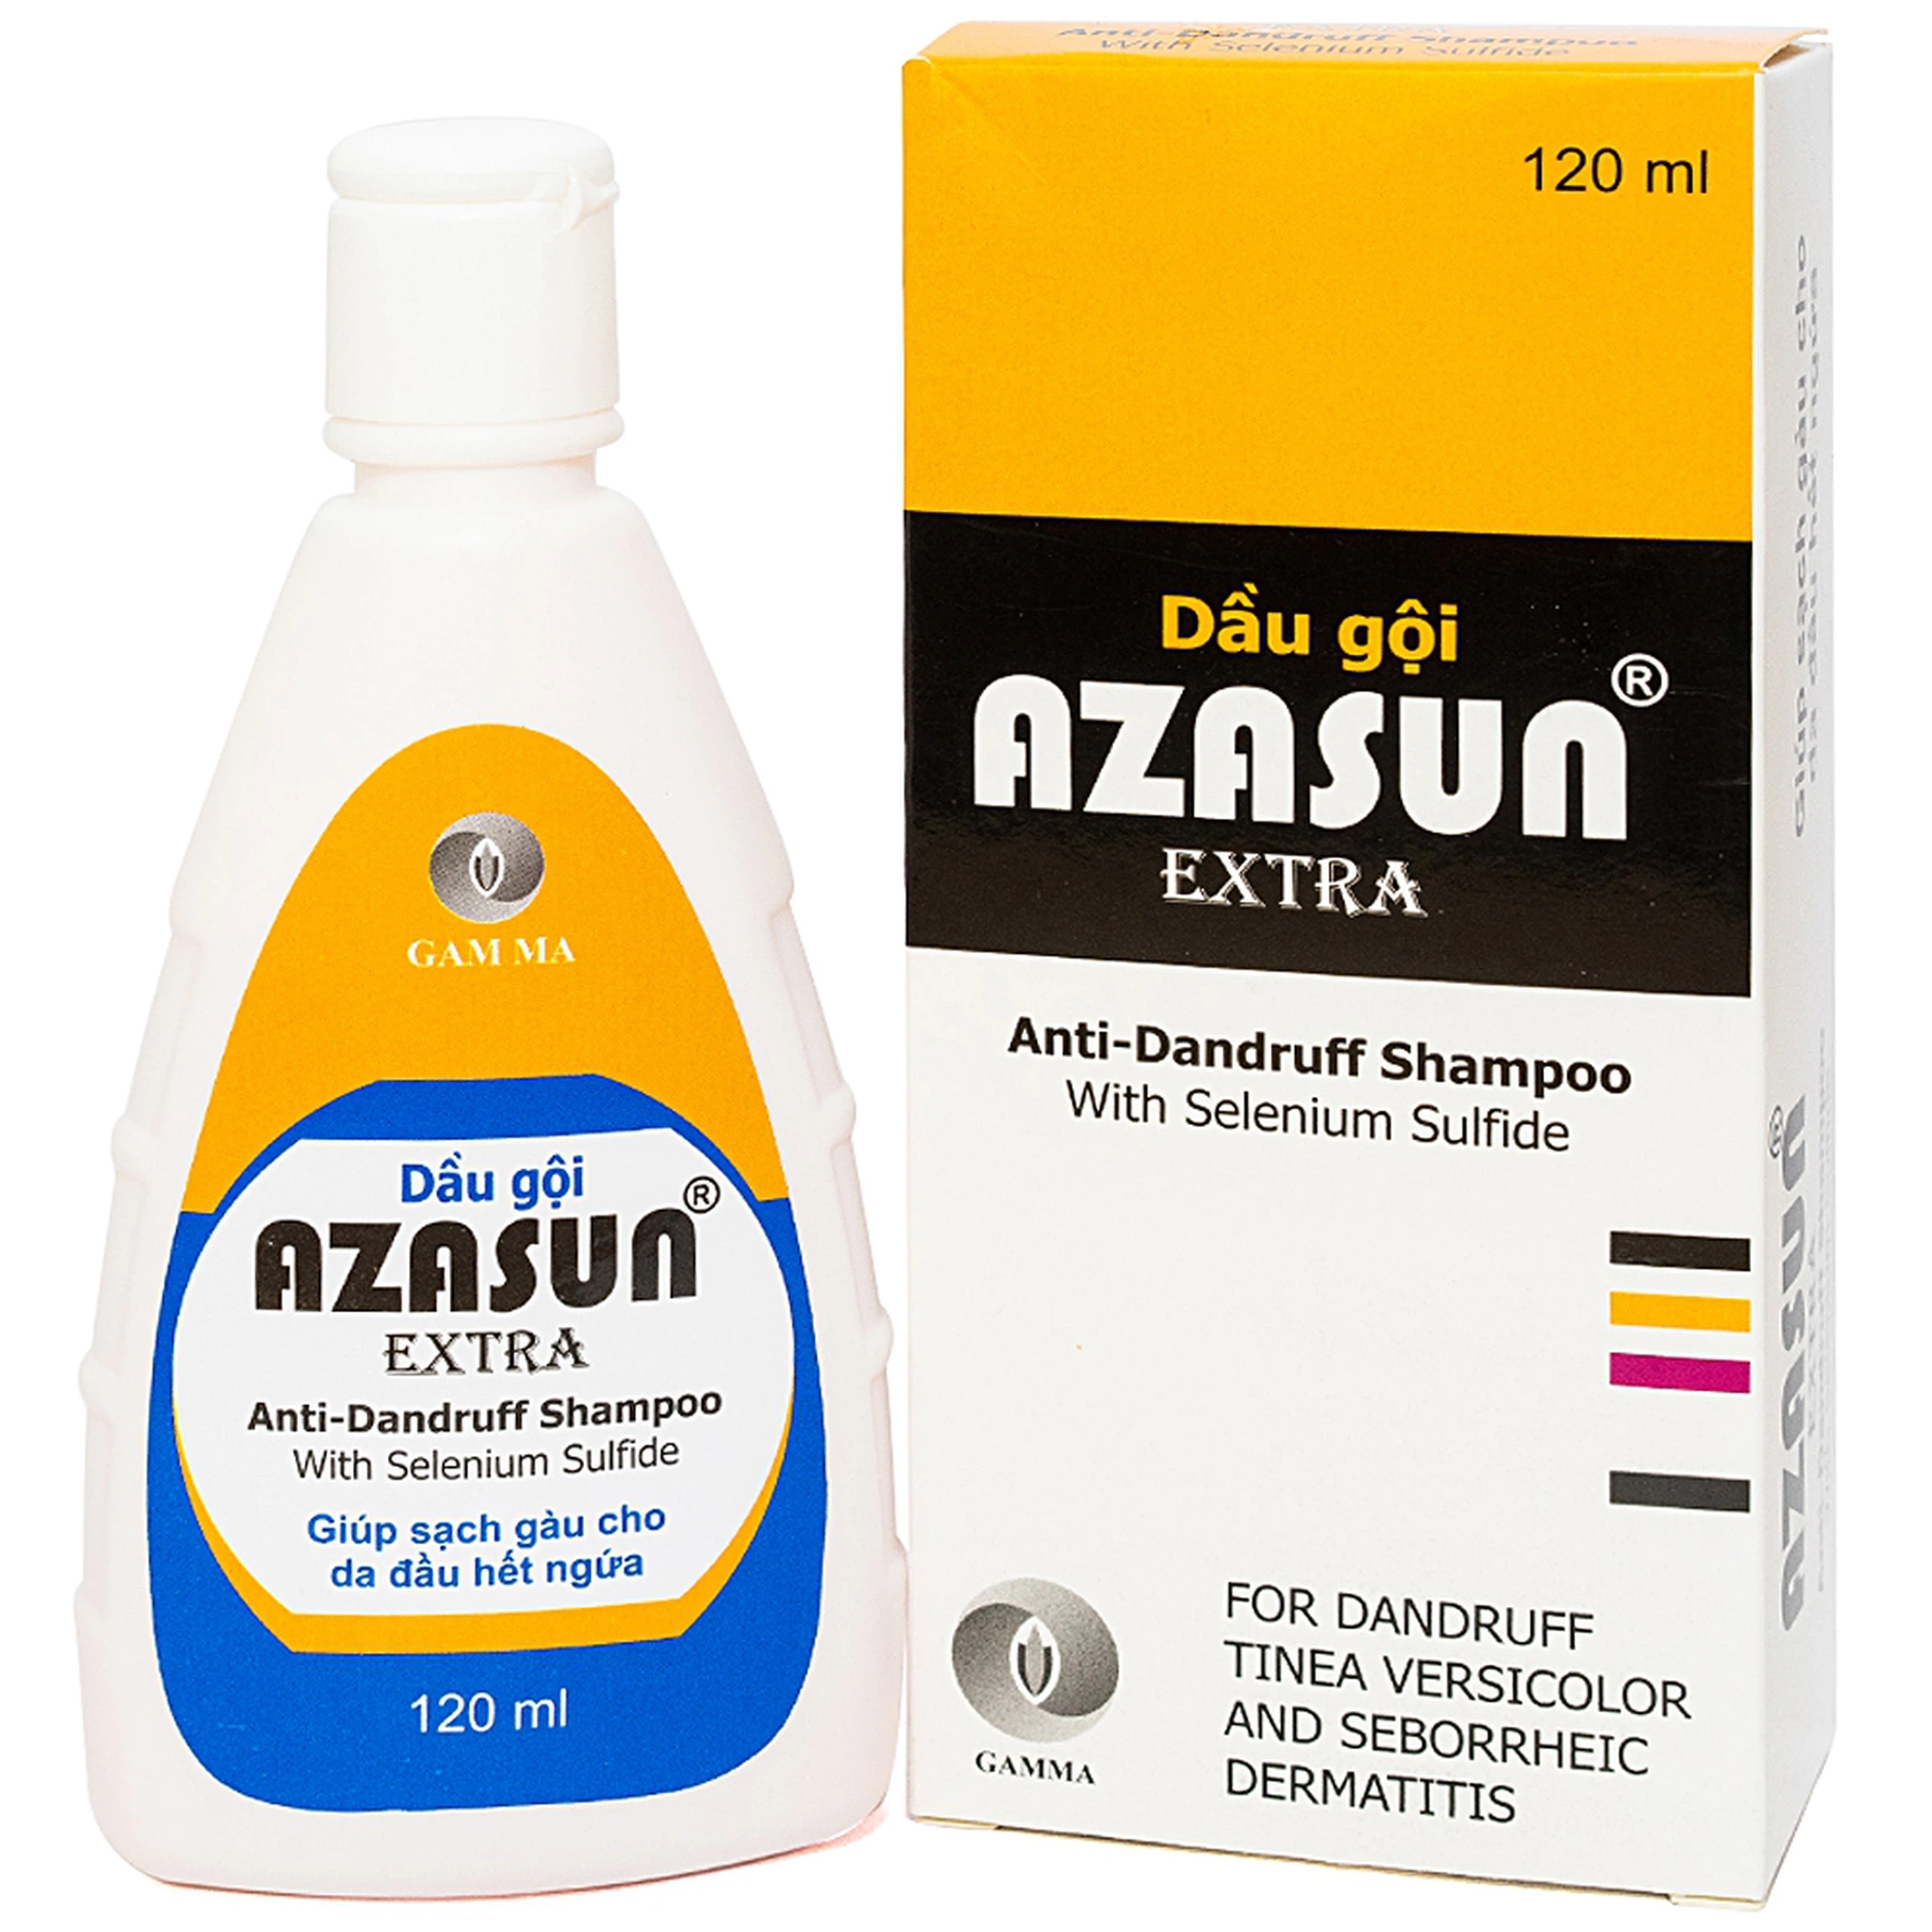 Dầu gội Azasun Extra Gamma sạch gàu cho da đầu hết ngứa (120ml)